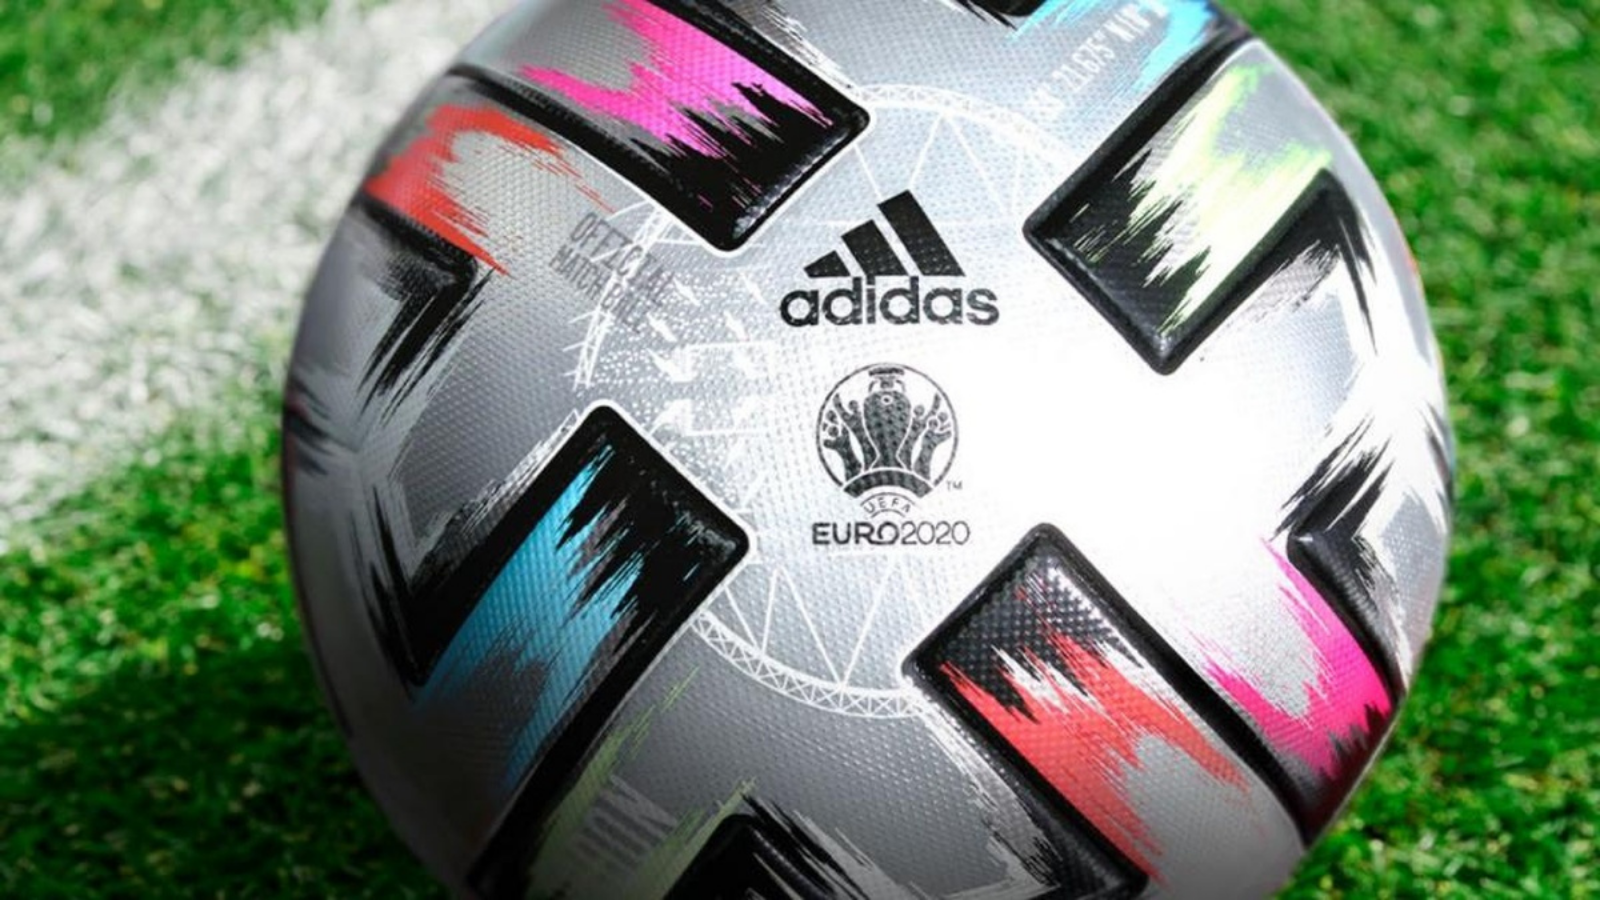 Мяч adidas Euro 2020. Мяч adidas Euro 2020 UEFA. Футбольный мяч адидас евро 2021. Мяч адидас 2021. Адидас 2020